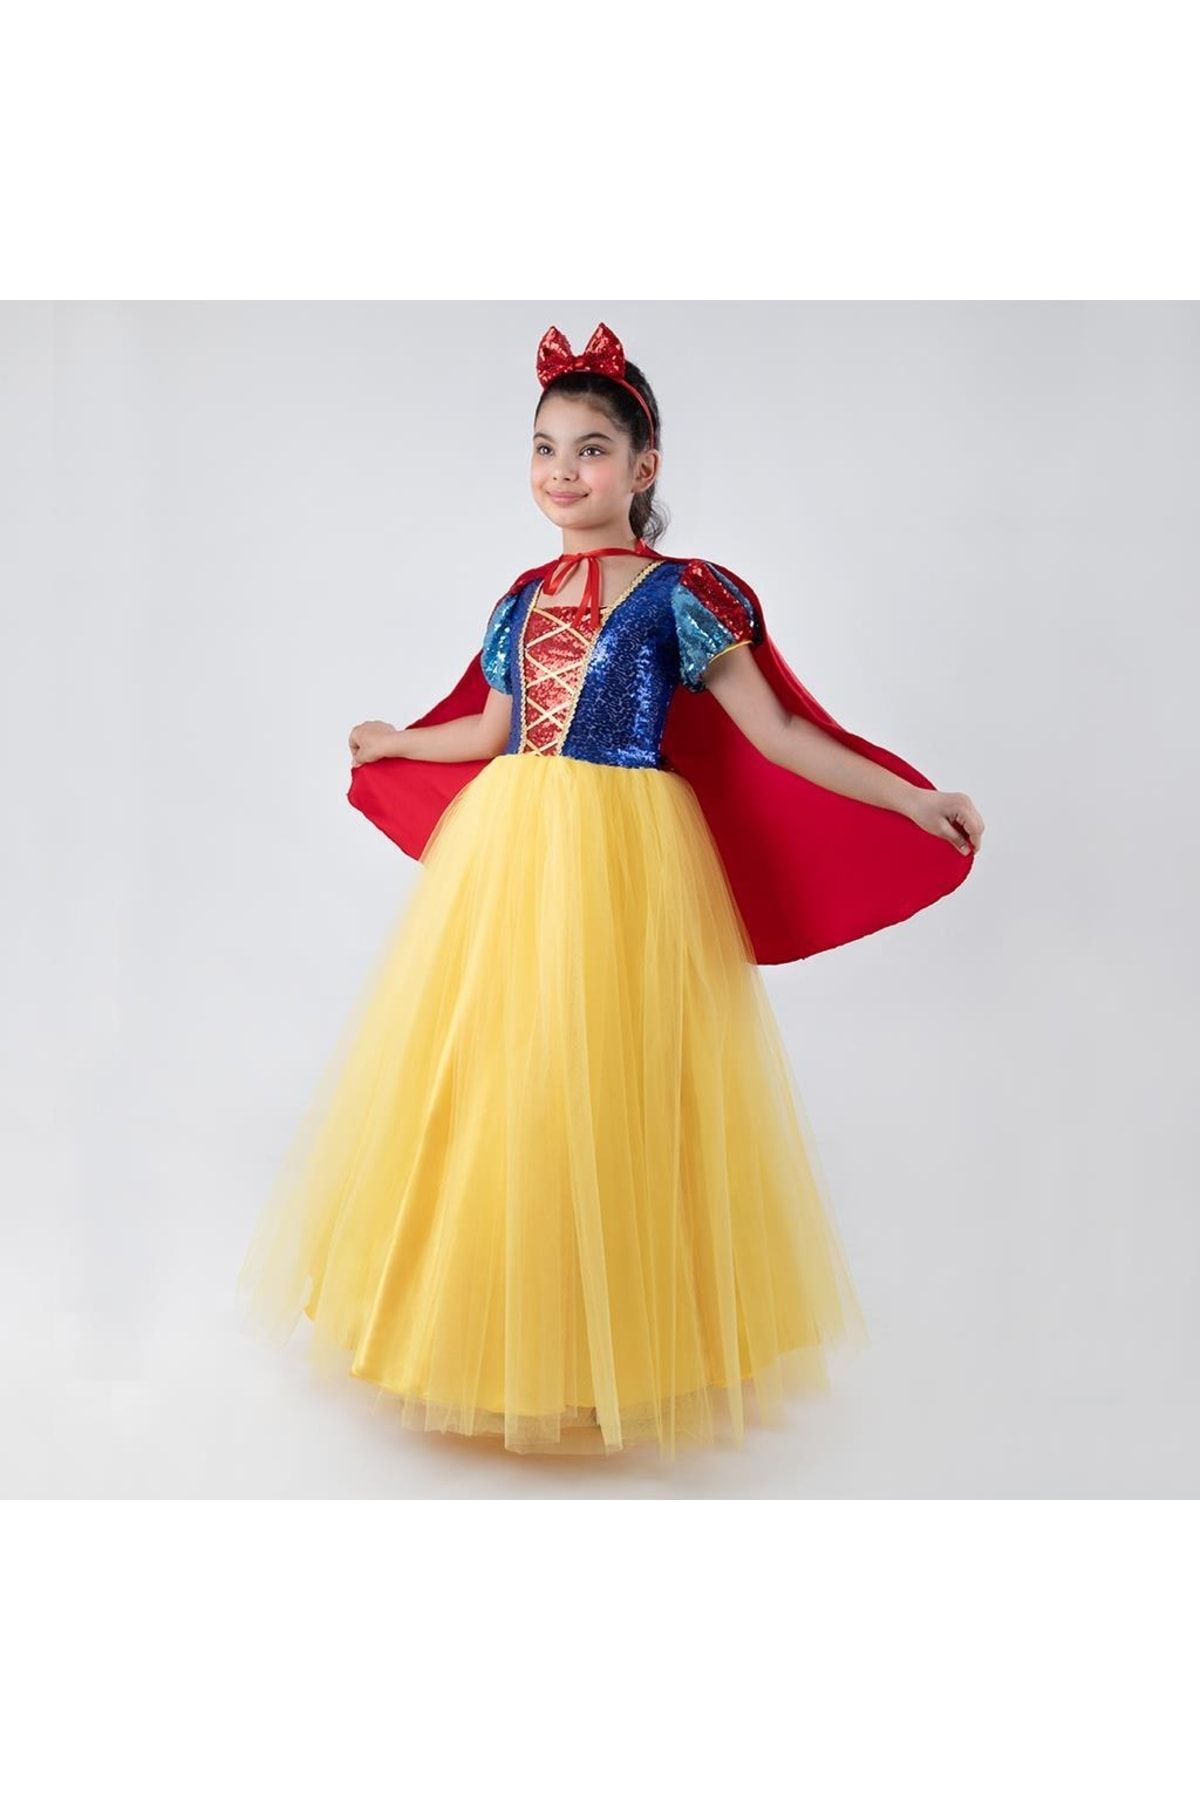 Mashotrend Kız Çocuk Karışık Renkli Karpuz Kollu Tarlatanlı Tül Saten Payetli Pamuk Prenses Kostümü